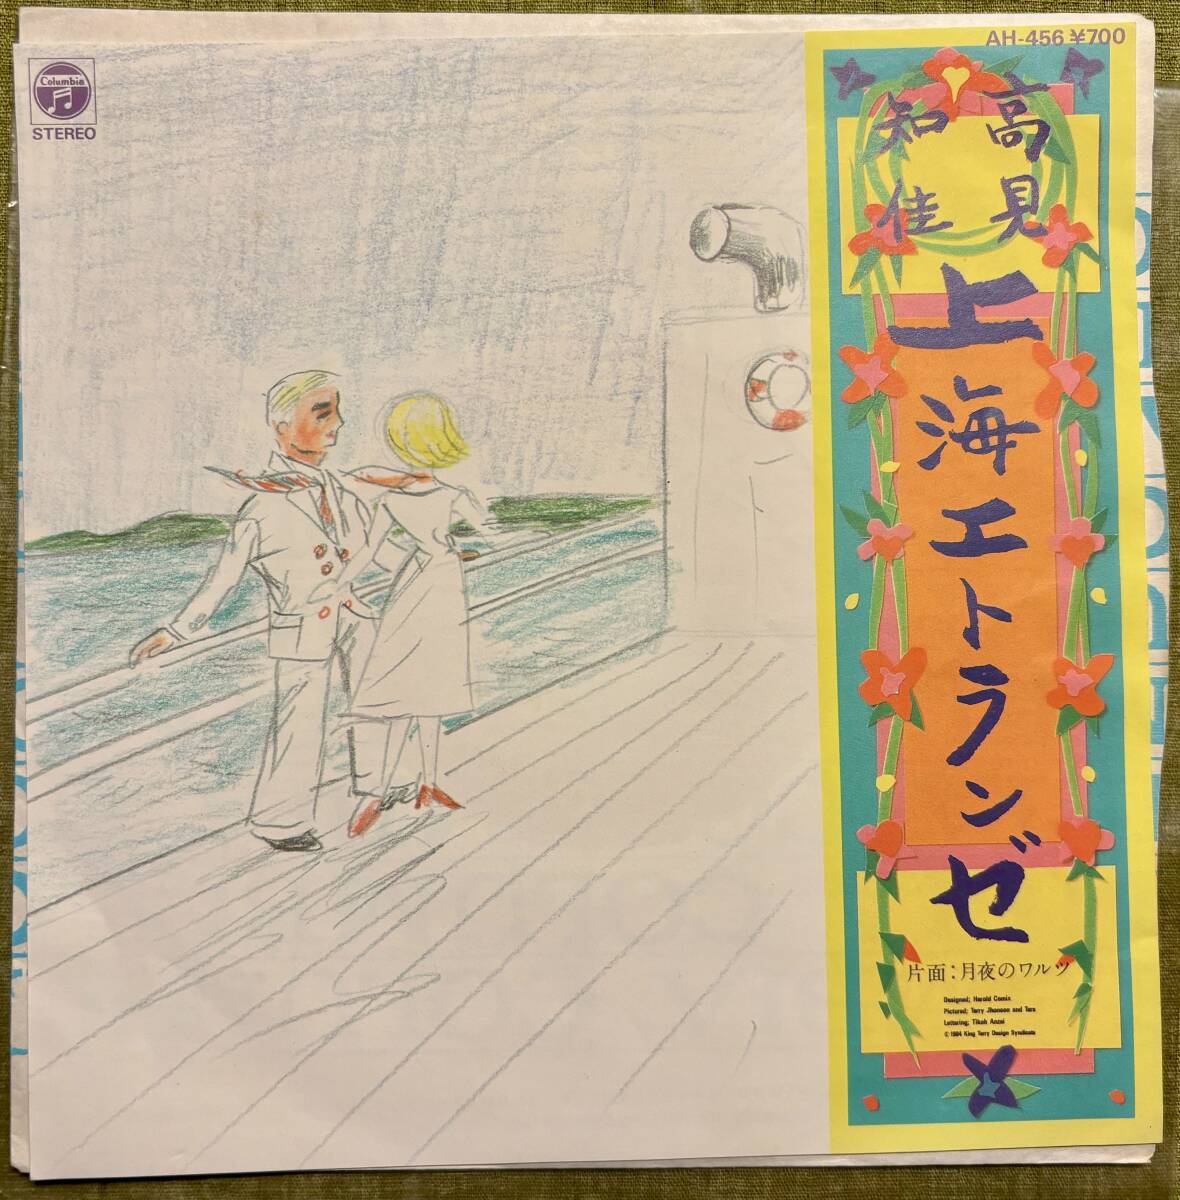 高見知佳 ■上海エトランゼ ■シングル盤 EPレコード ■EPO作品 ■発売1984年_画像2